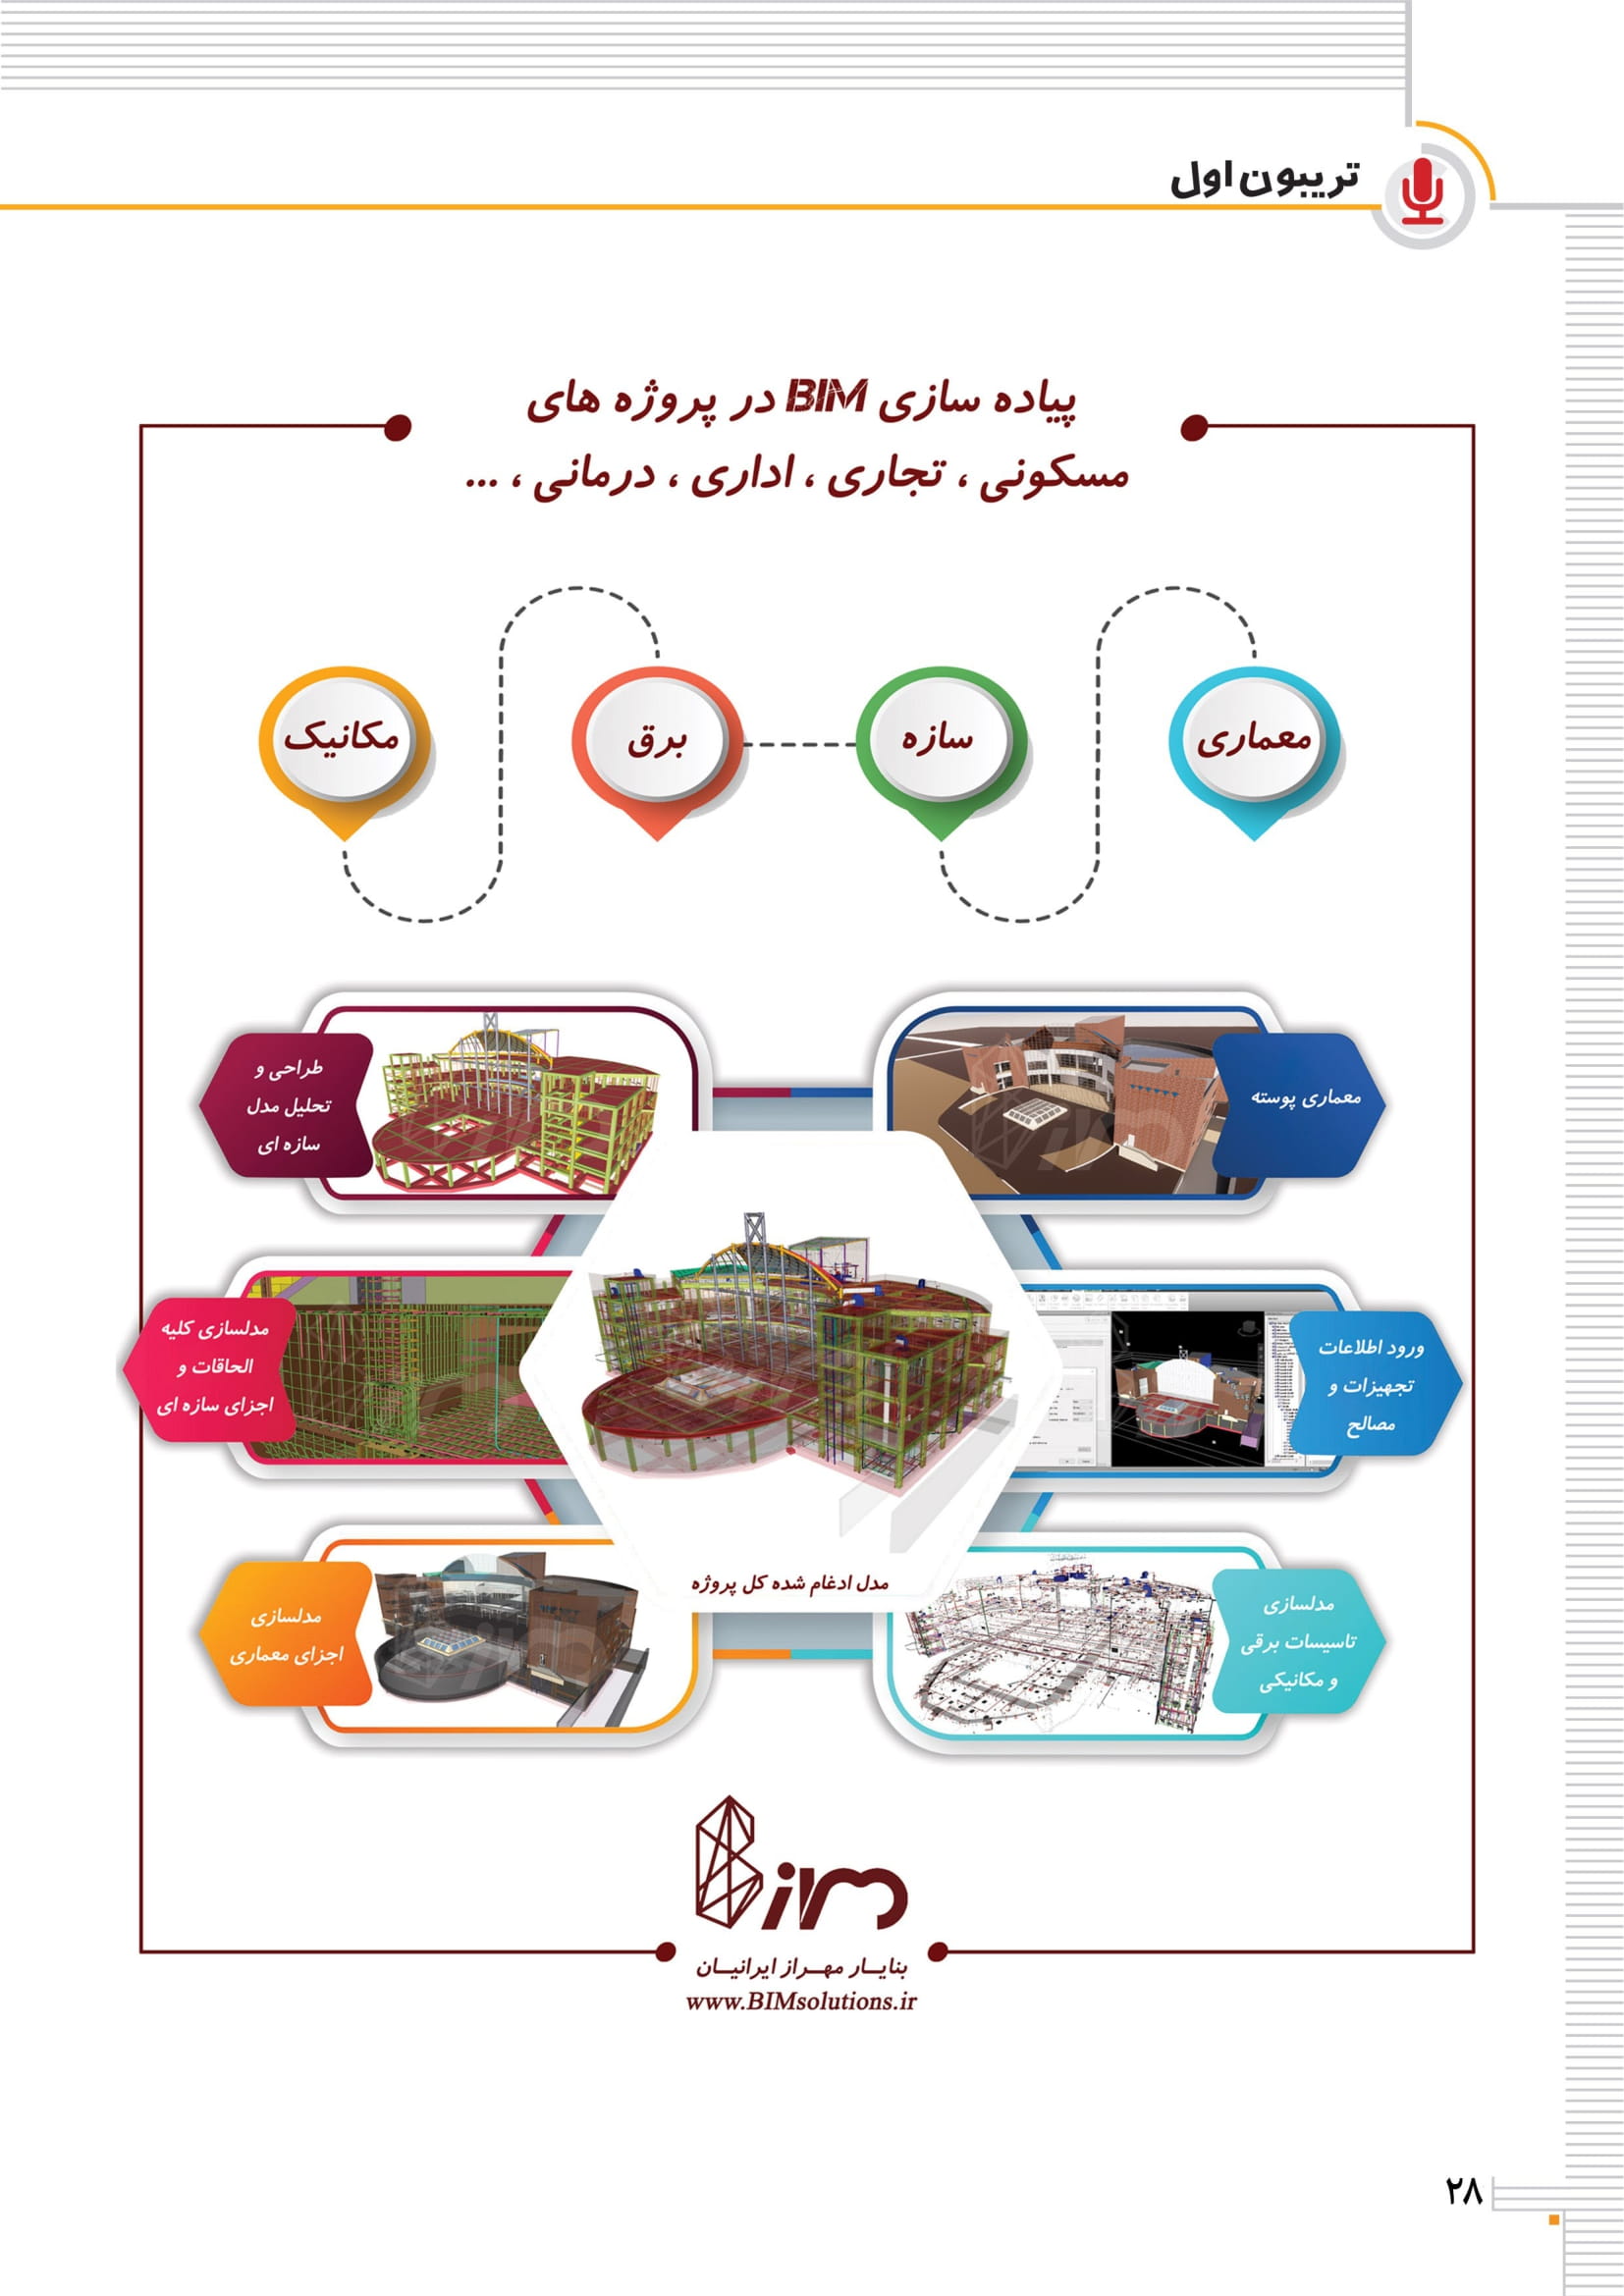 معرفی شرکت بنا یار مهراز ایرانیان در ماهنامه زیست بوم خلاق کشور